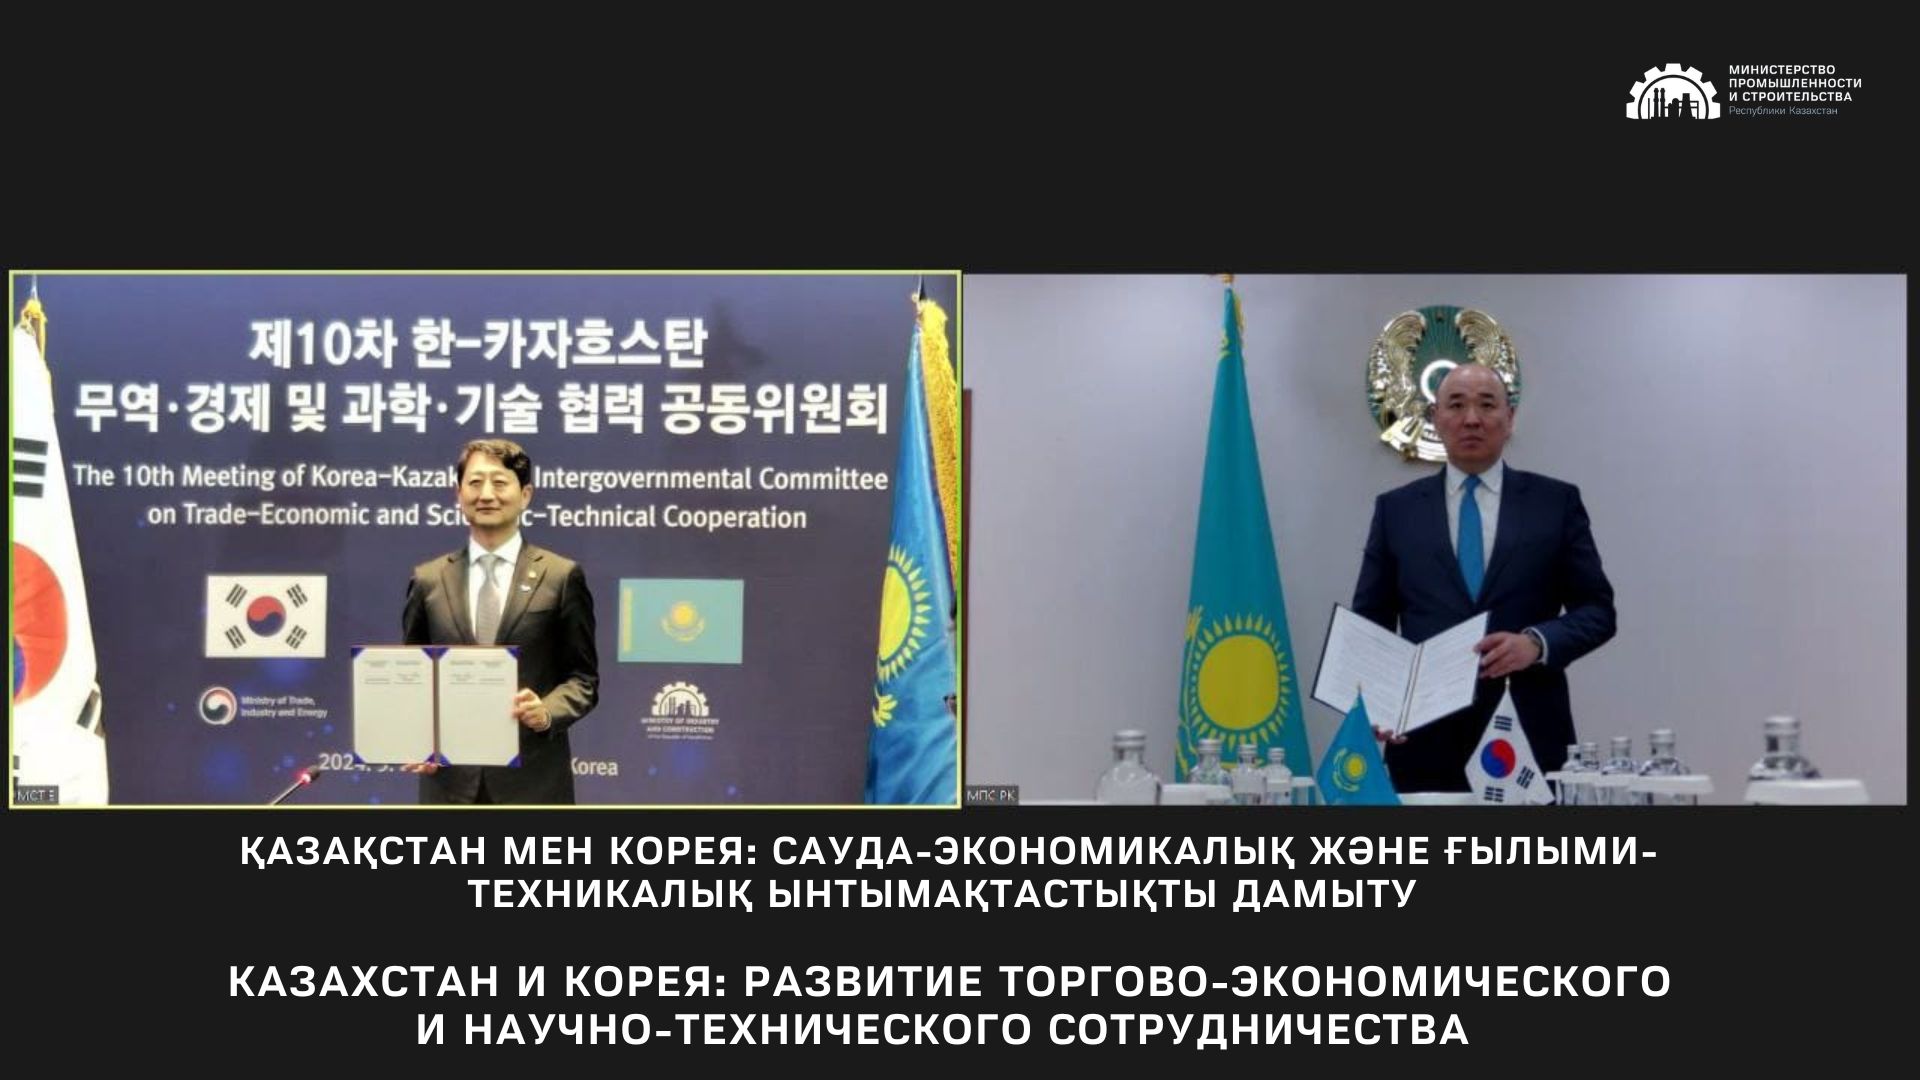 Казахстан и Корея: развитие торгово-экономического и научно-технического сотрудничества